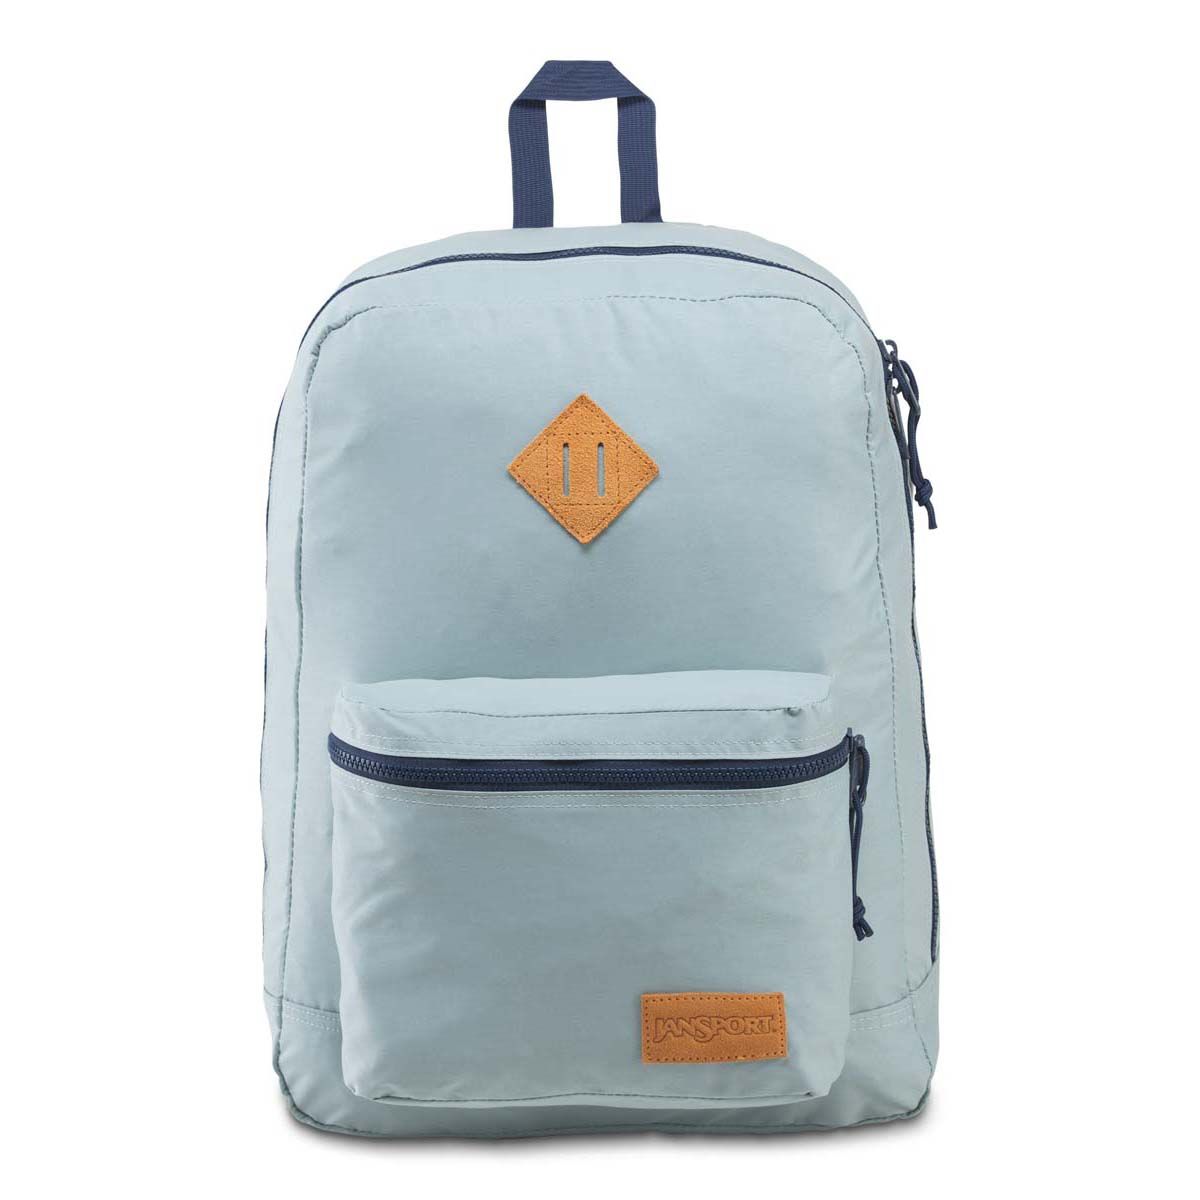 JanSport Super Lite Backpack in Moon Haze/Navy | NEON